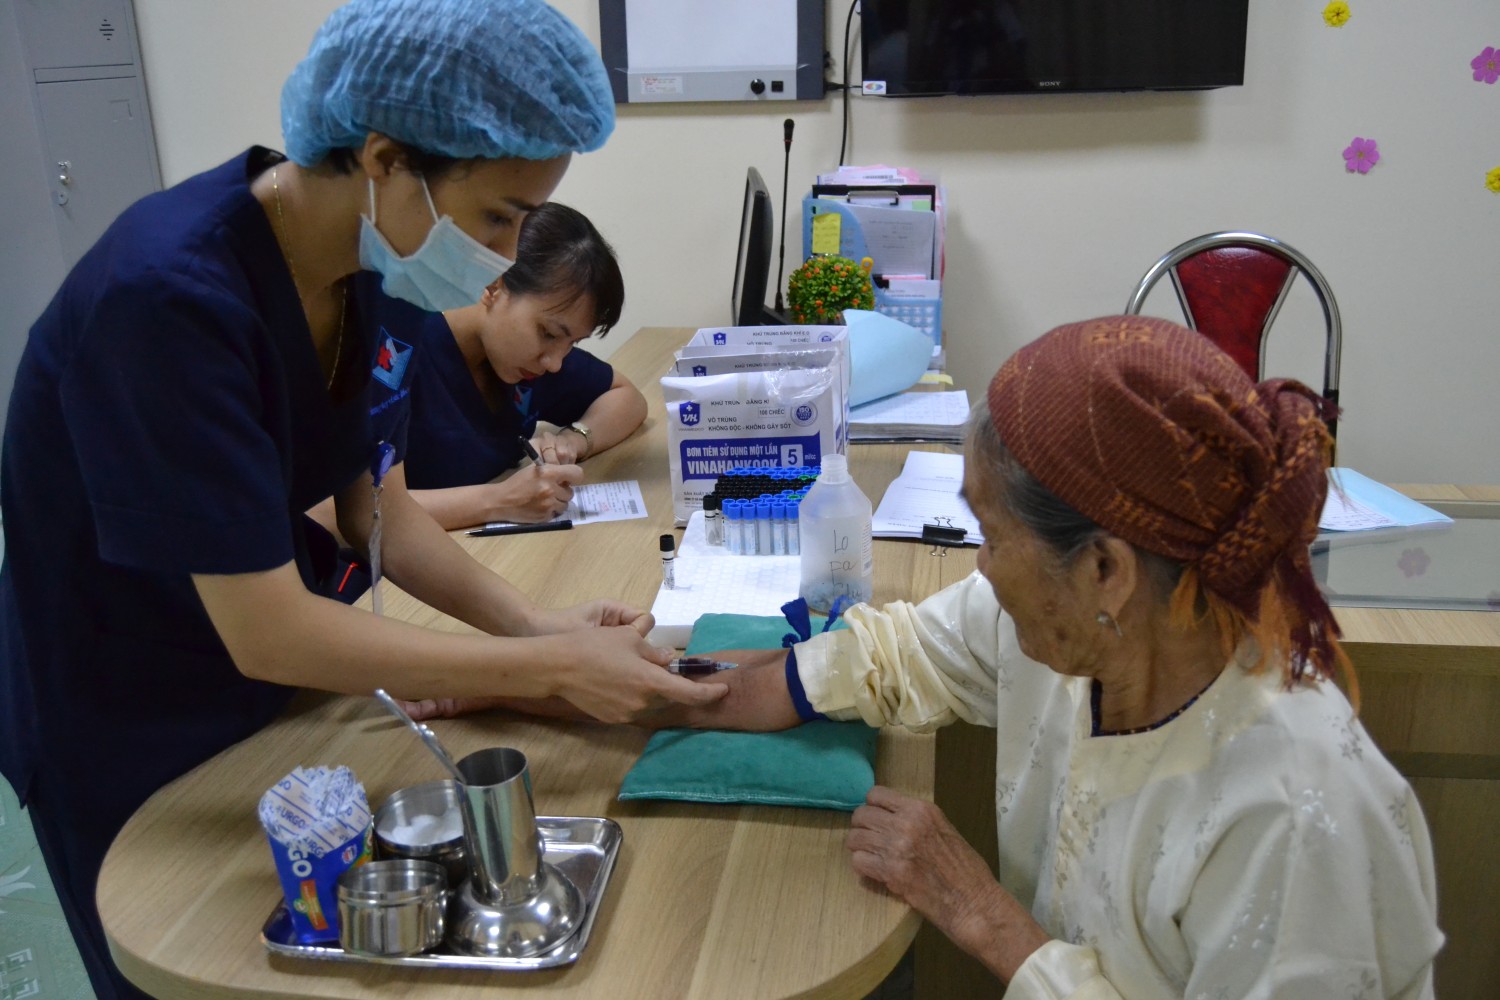 Khám bệnh và cấp thuốc miễn phí cho người cao tuổi tại bệnh viện đa khoa Hùng Vương.